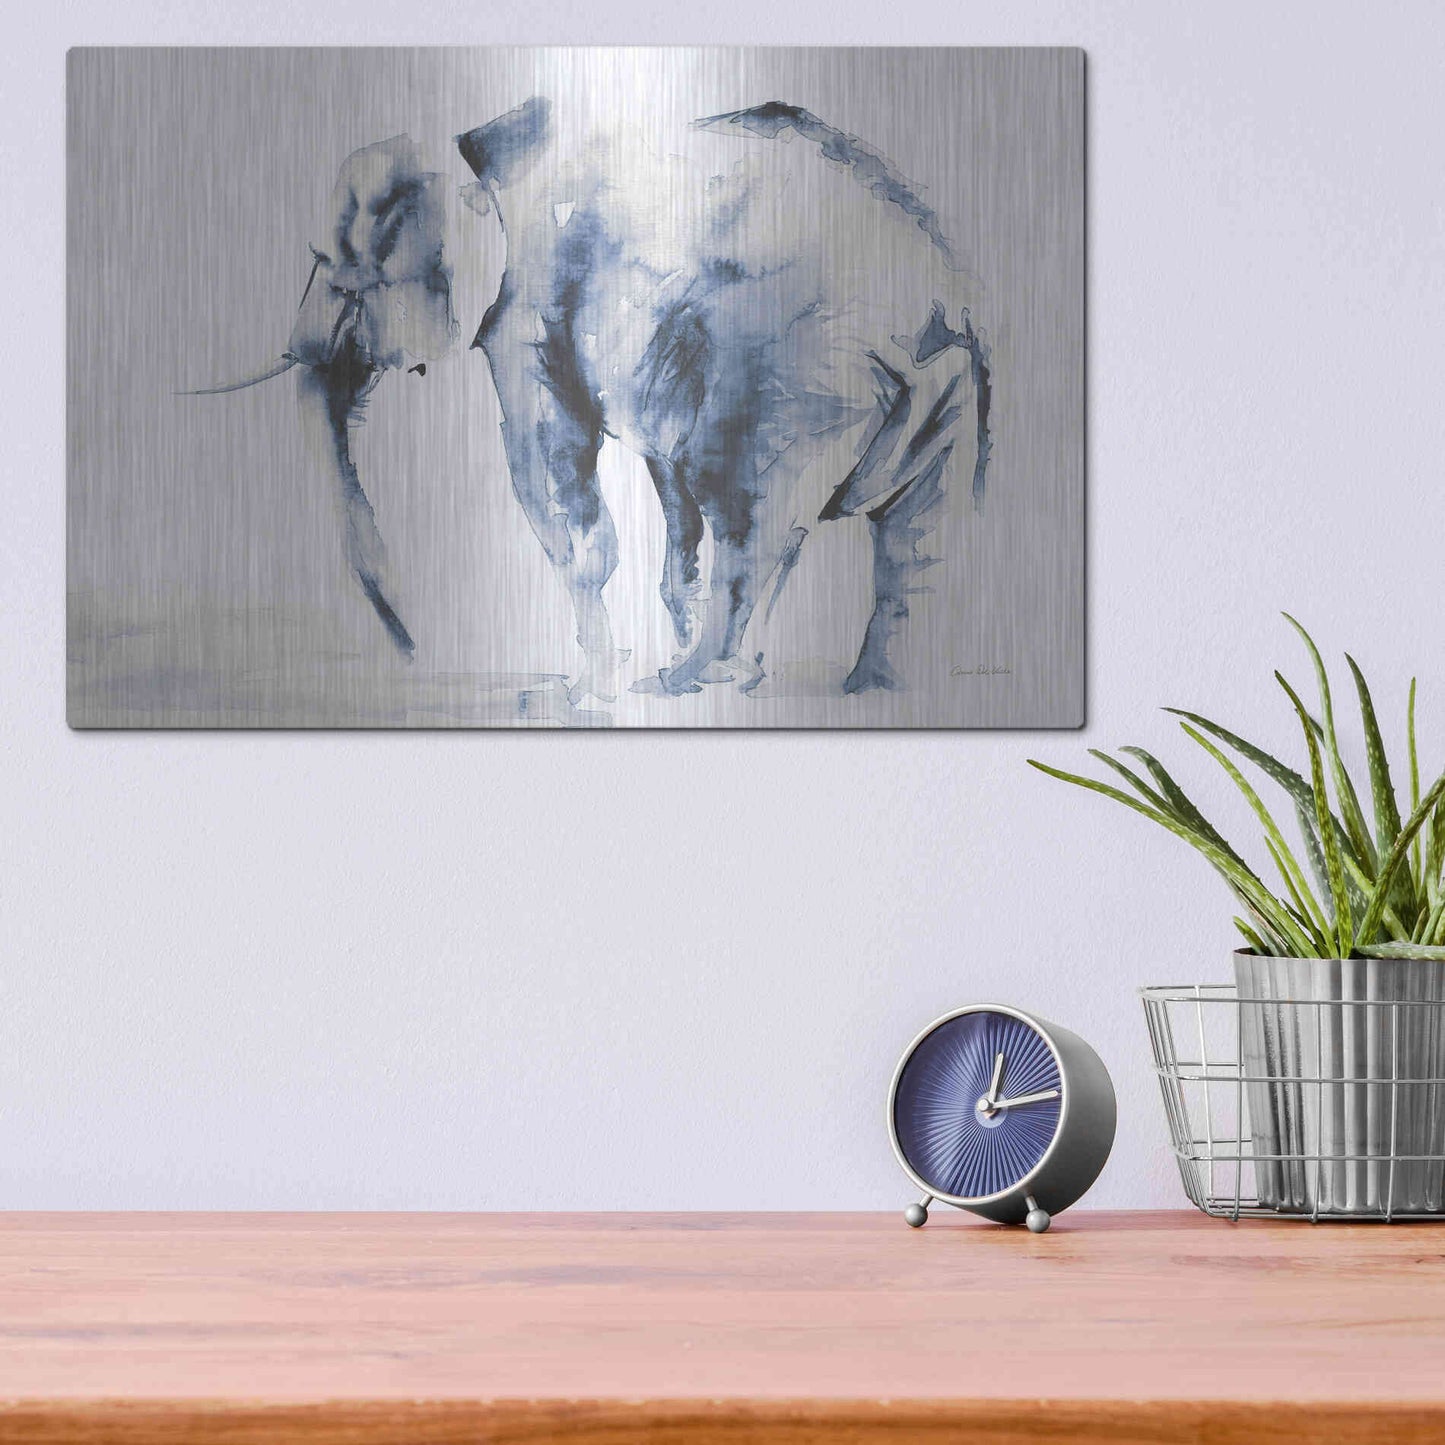 Luxe Metal Art 'Lone Elephant Blue Gray' by Alan Majchrowicz, Metal Wall Art,16x12